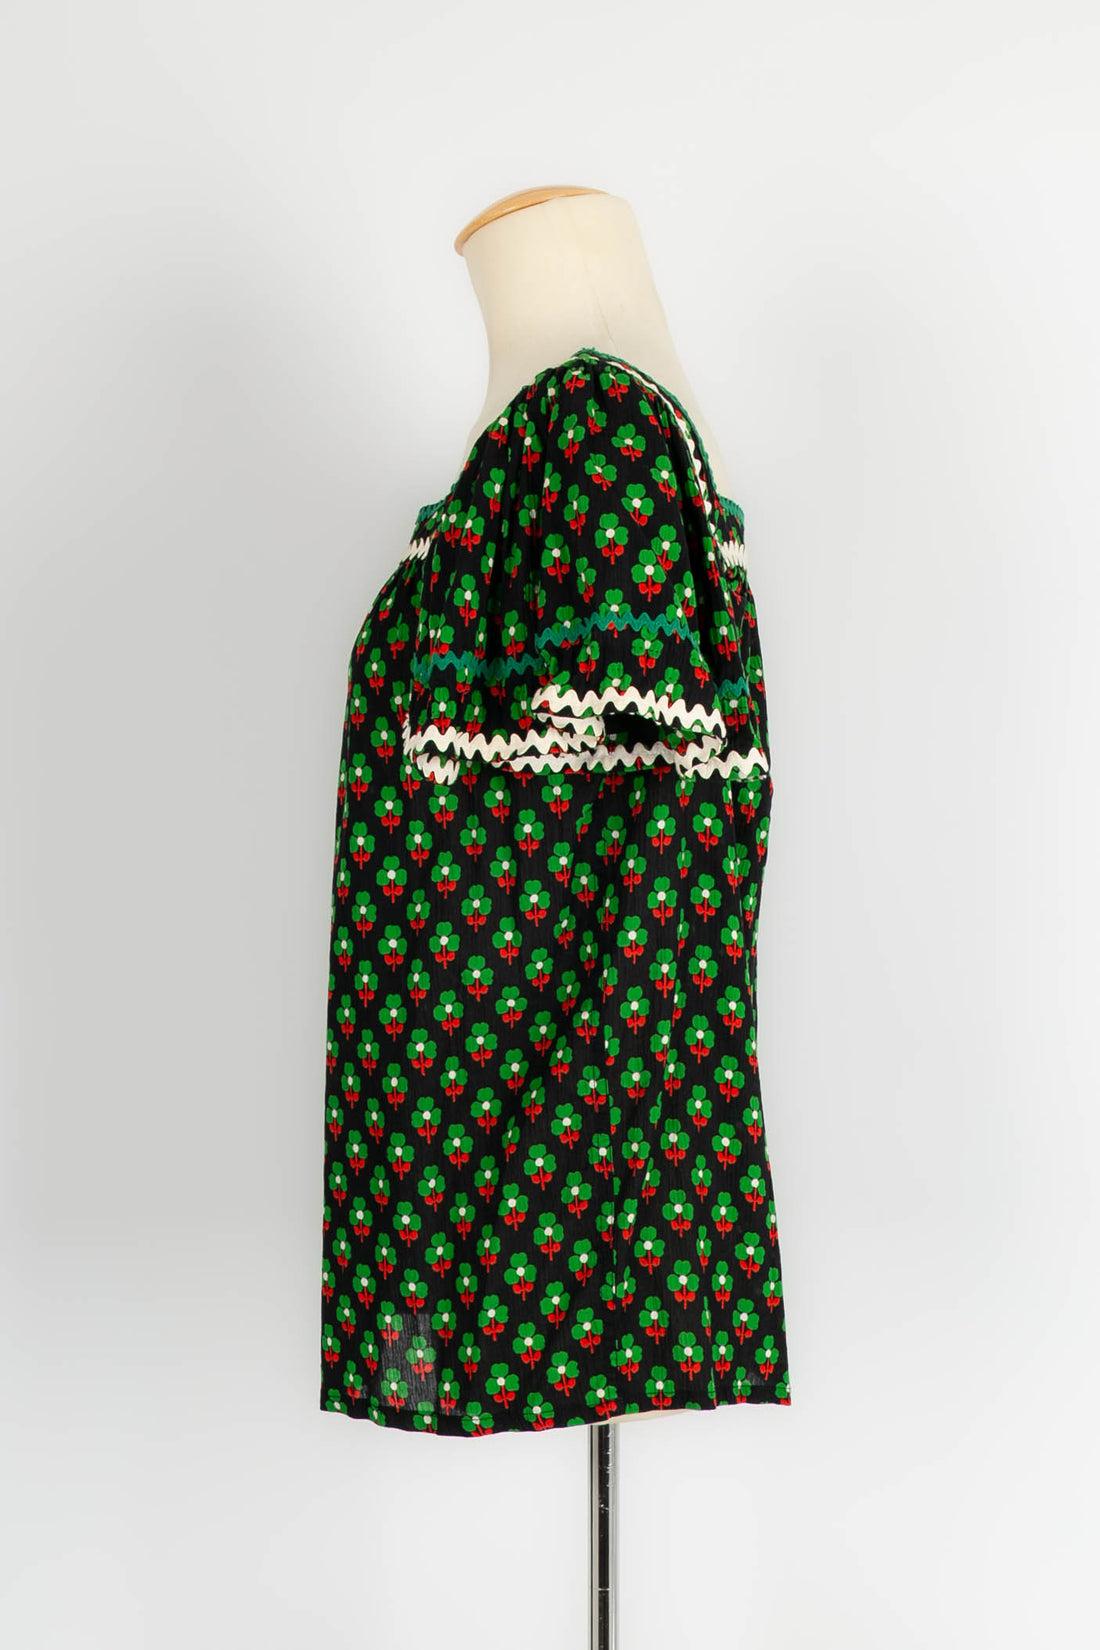 Yves Saint Laurent -(Made in France) Top aus schwarzer und grüner Baumwolle. Kein Größenetikett oder Zusammensetzung, es passt eine 36FR.

Zusätzliche Informationen:

Abmessungen: Brustkorb: 40 cm 
Länge: 60 cm

Bedingung: 
Sehr guter